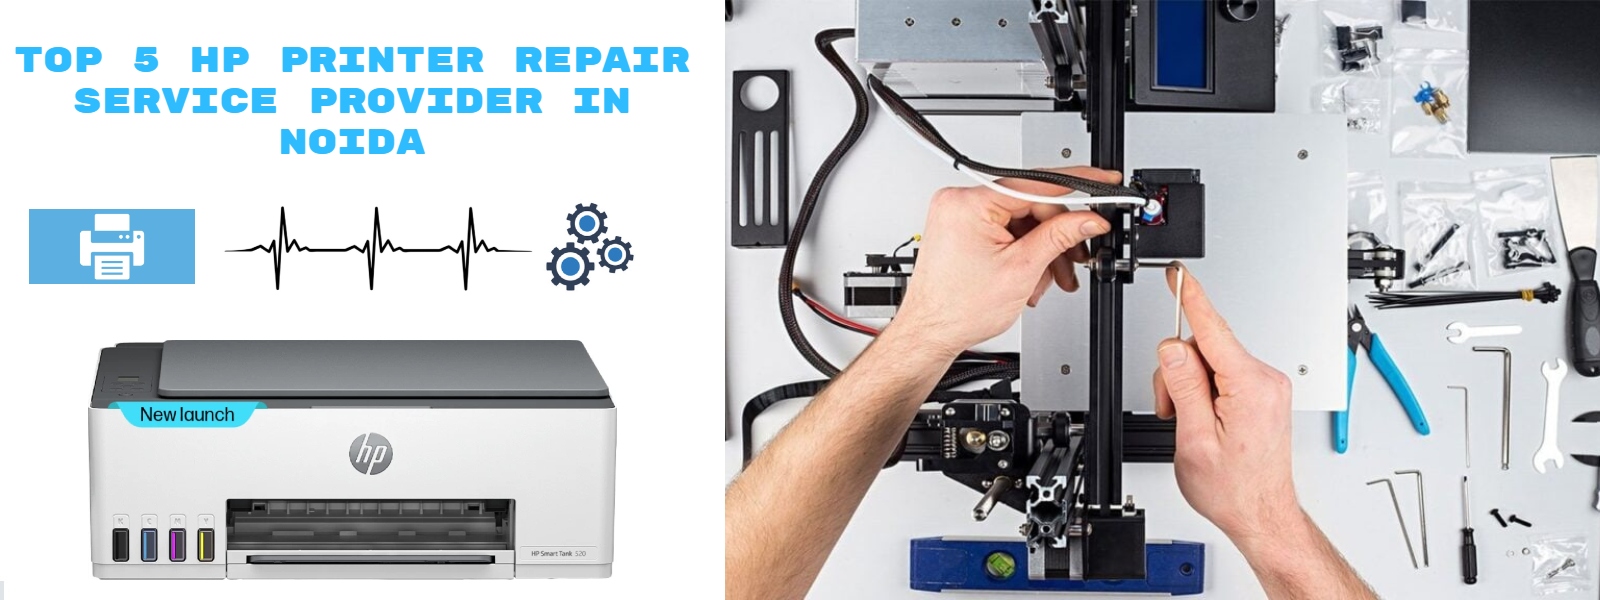 Top 5 HP Repair Printer Service Provider In Noida